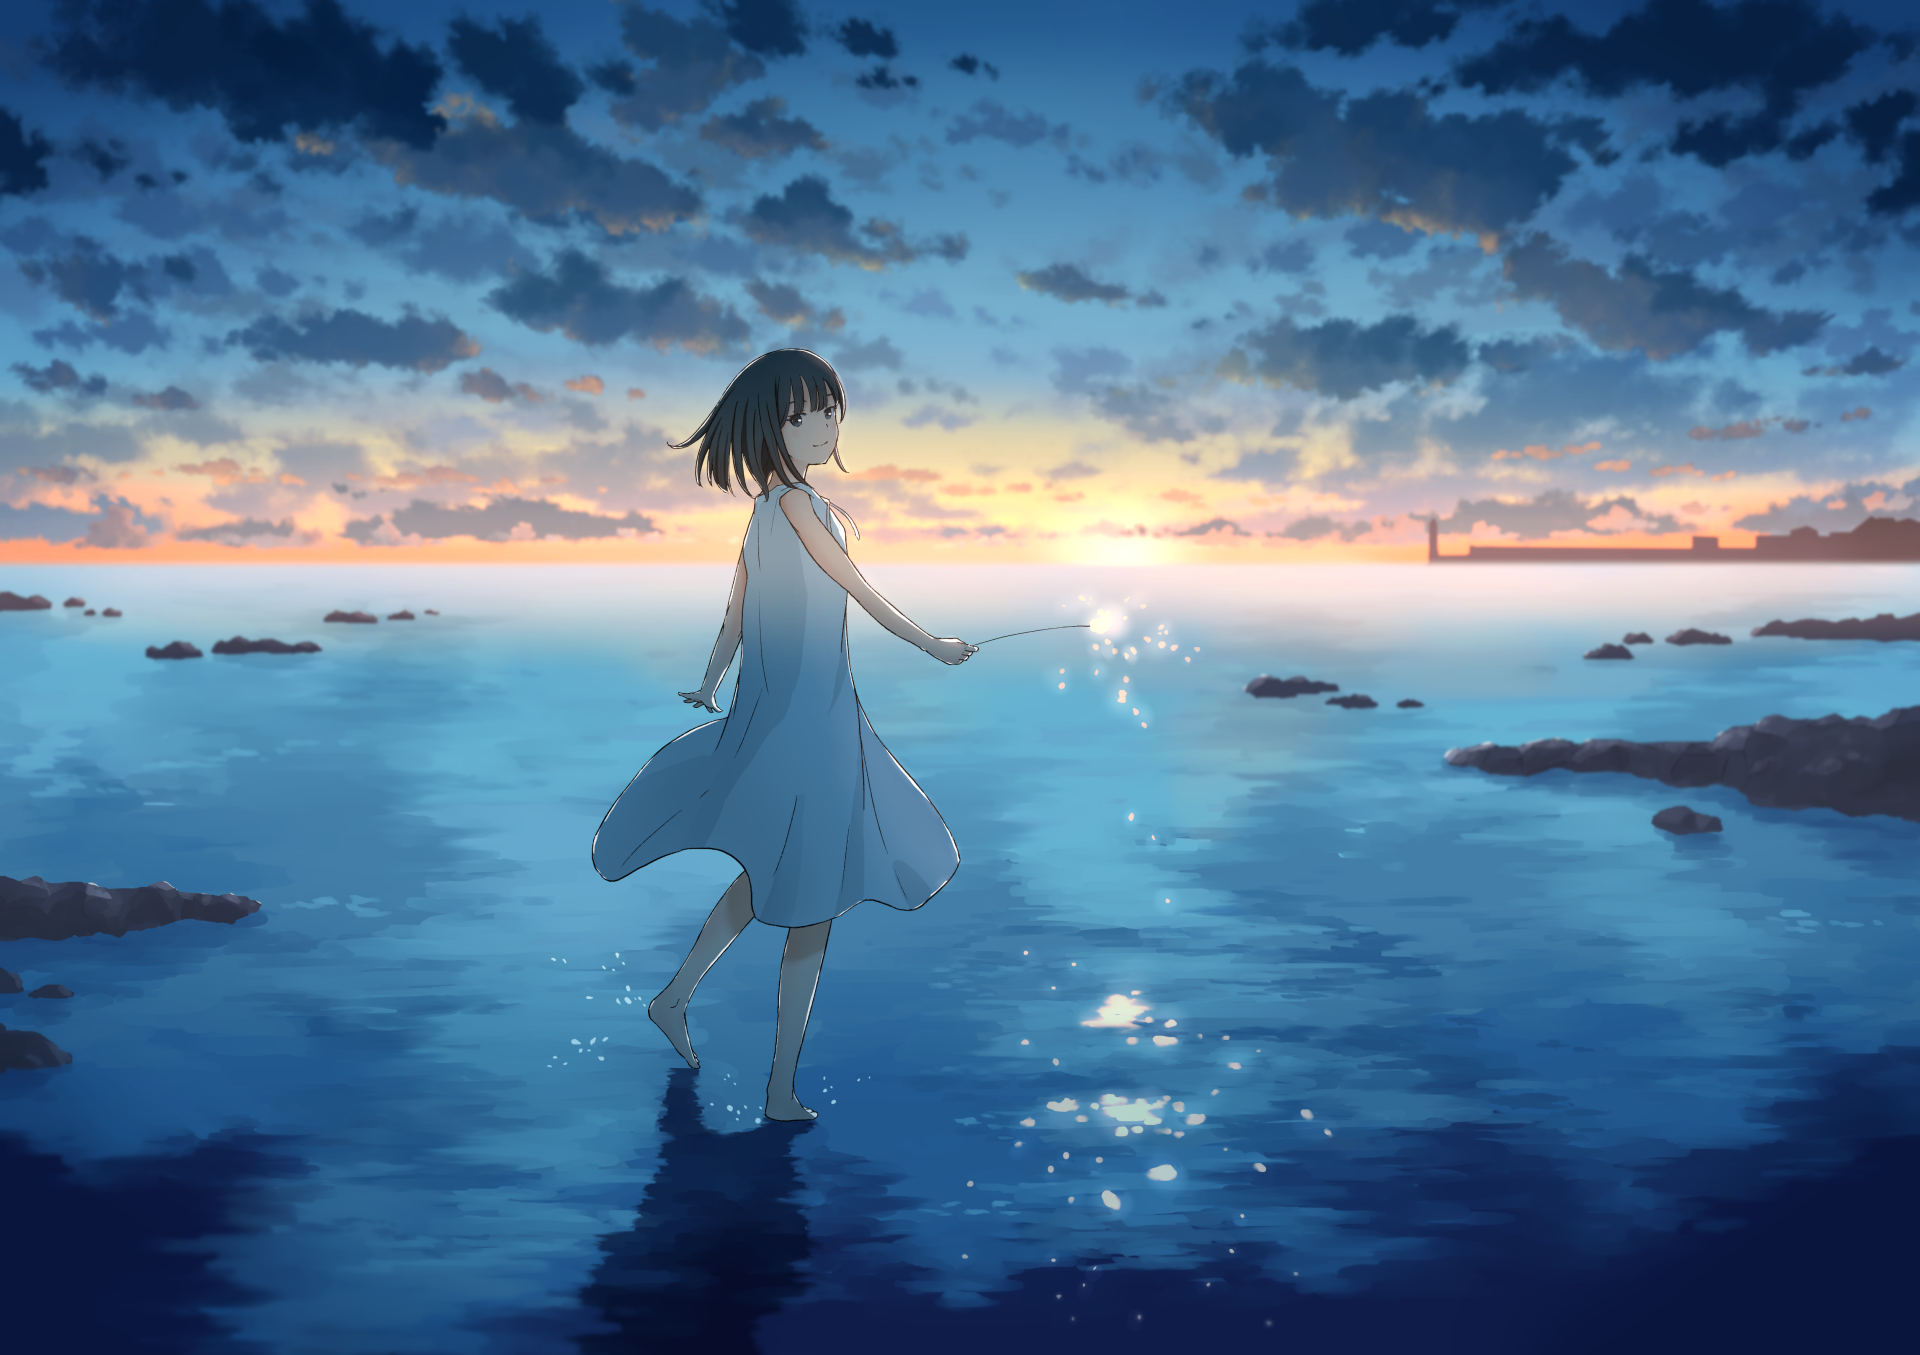 Anime 1920x1355 anime 2D artwork digital art landscape sky clouds beach sunset barefoot dress sun dress